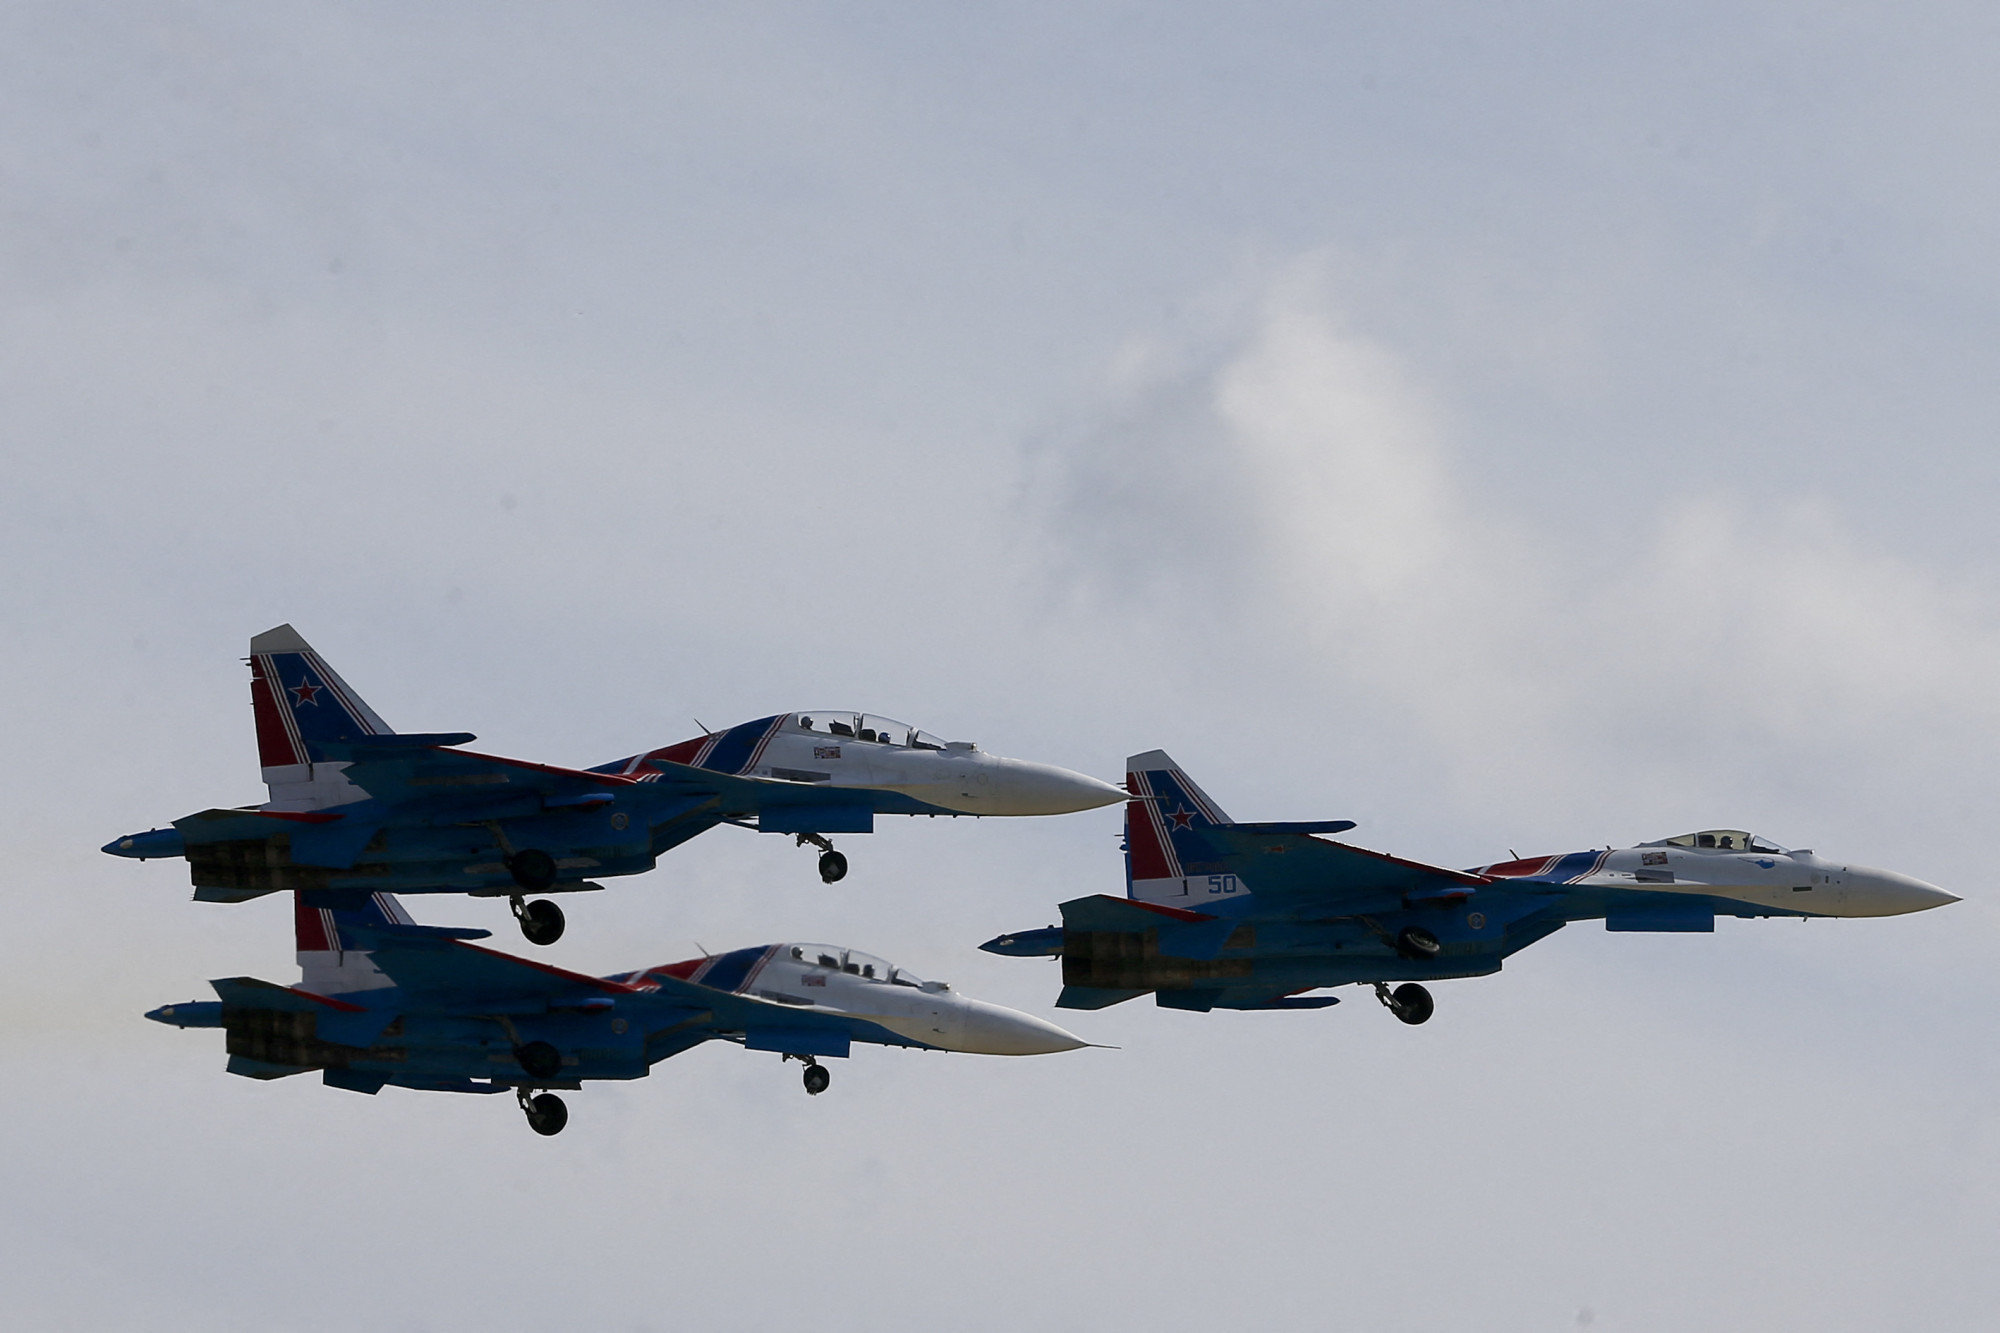 Járőröző lengyel gépet zavartak meg az oroszok a Fekete-tenger felett